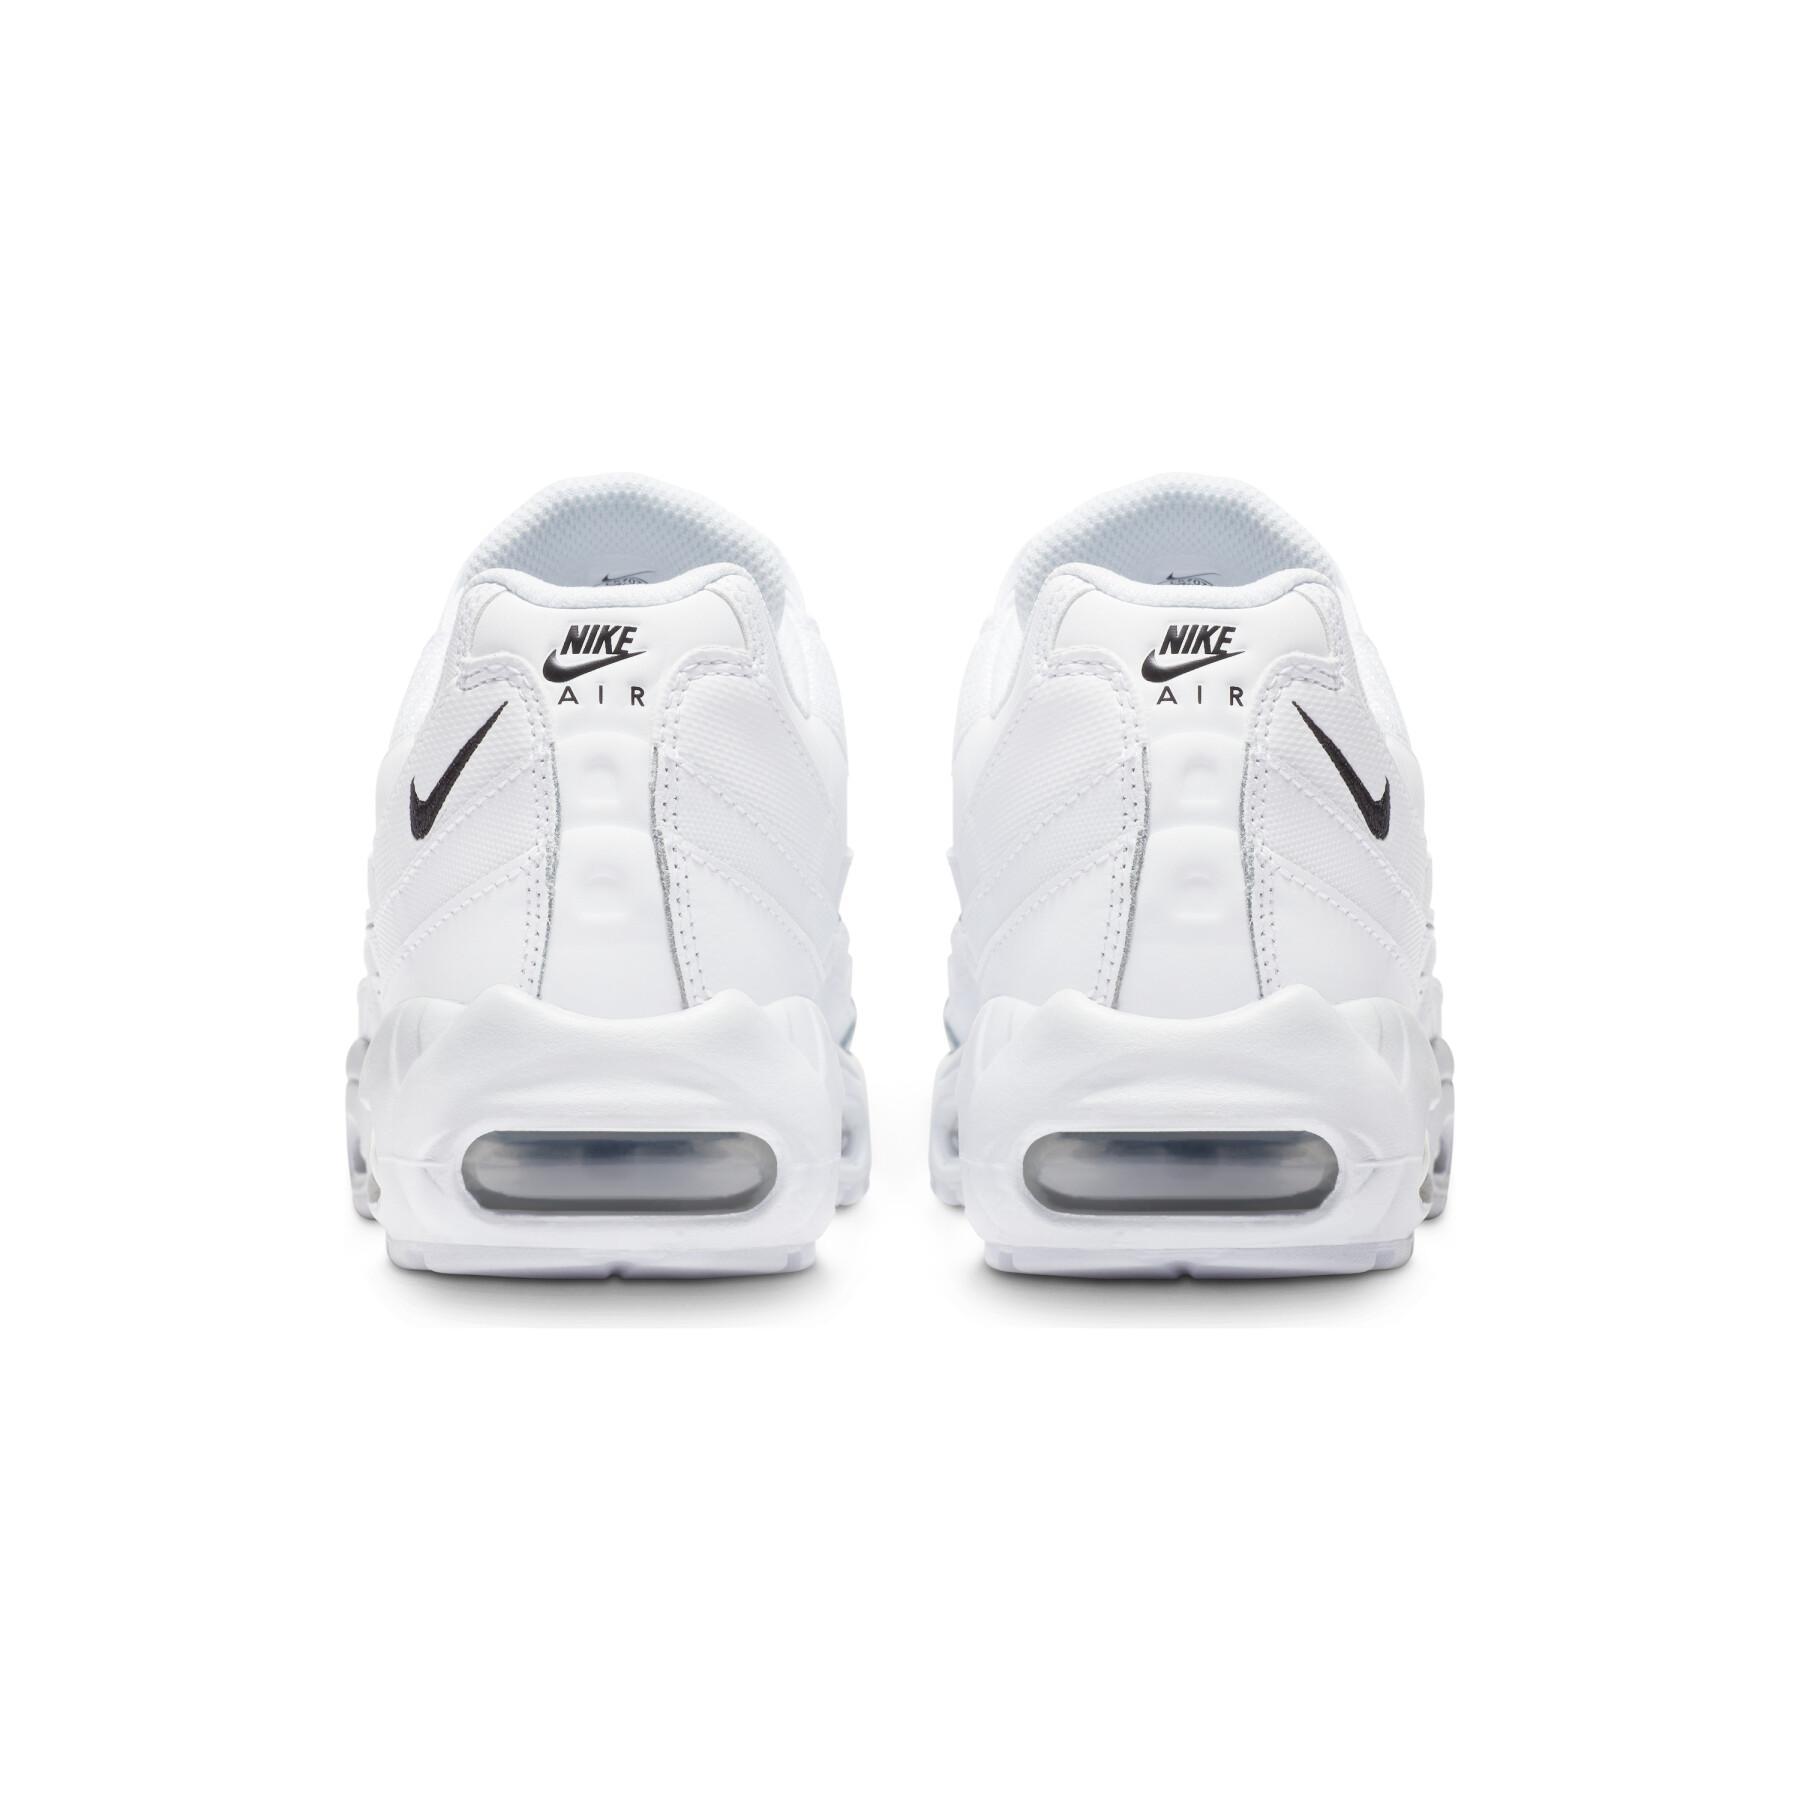 Women's sneakers Nike Air Max 95